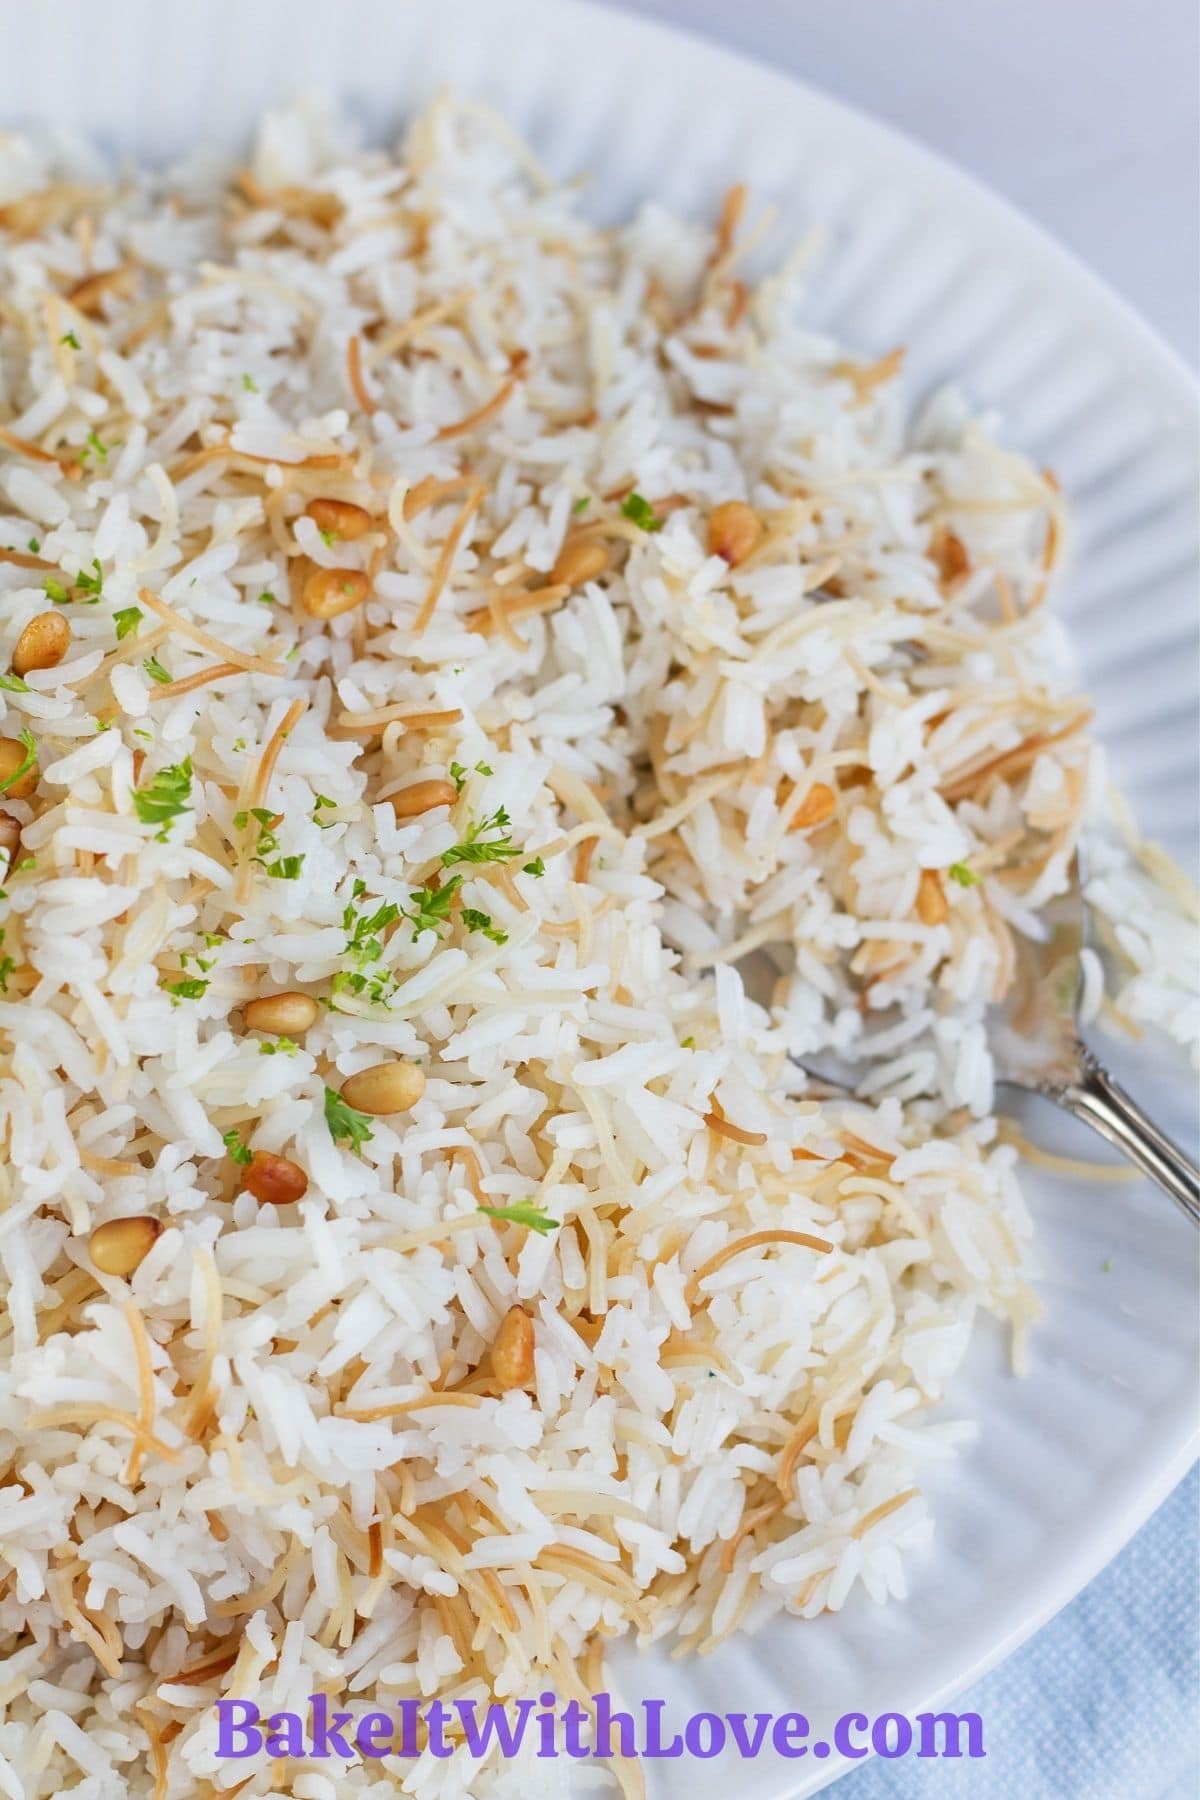 सुंदर और सुगंधित सेंवई चावल बड़े सफेद थाली में परोसा जाता है।